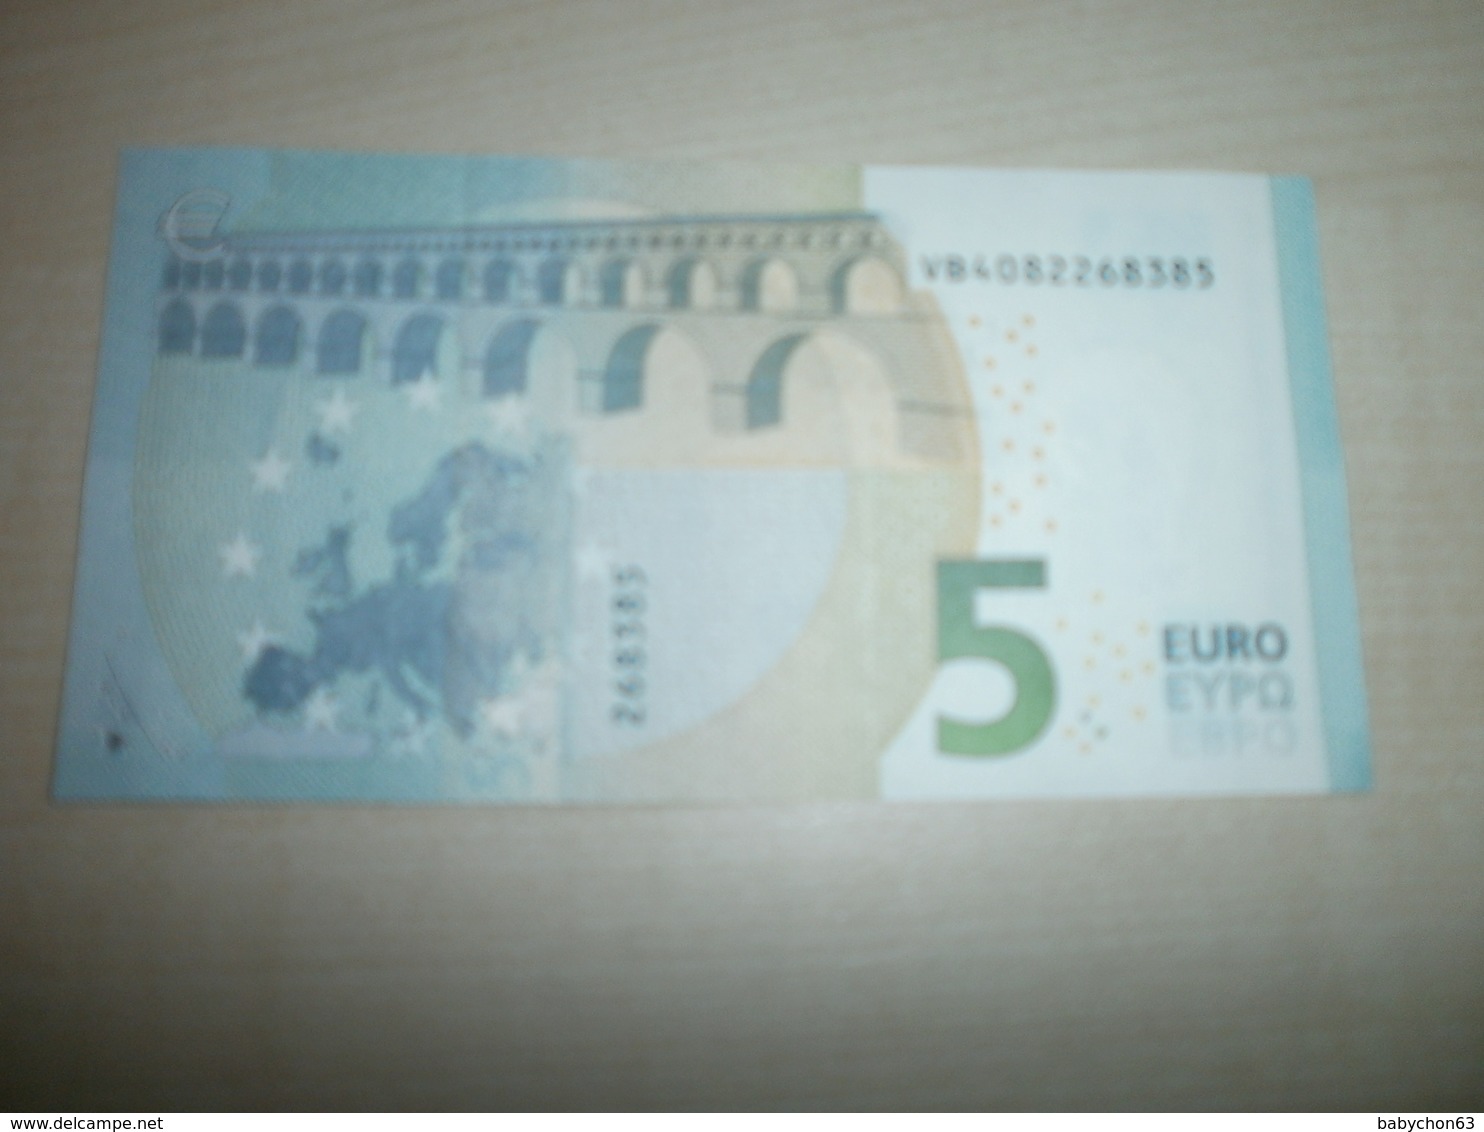 5 EUROS (V V010 H6) - 5 Euro